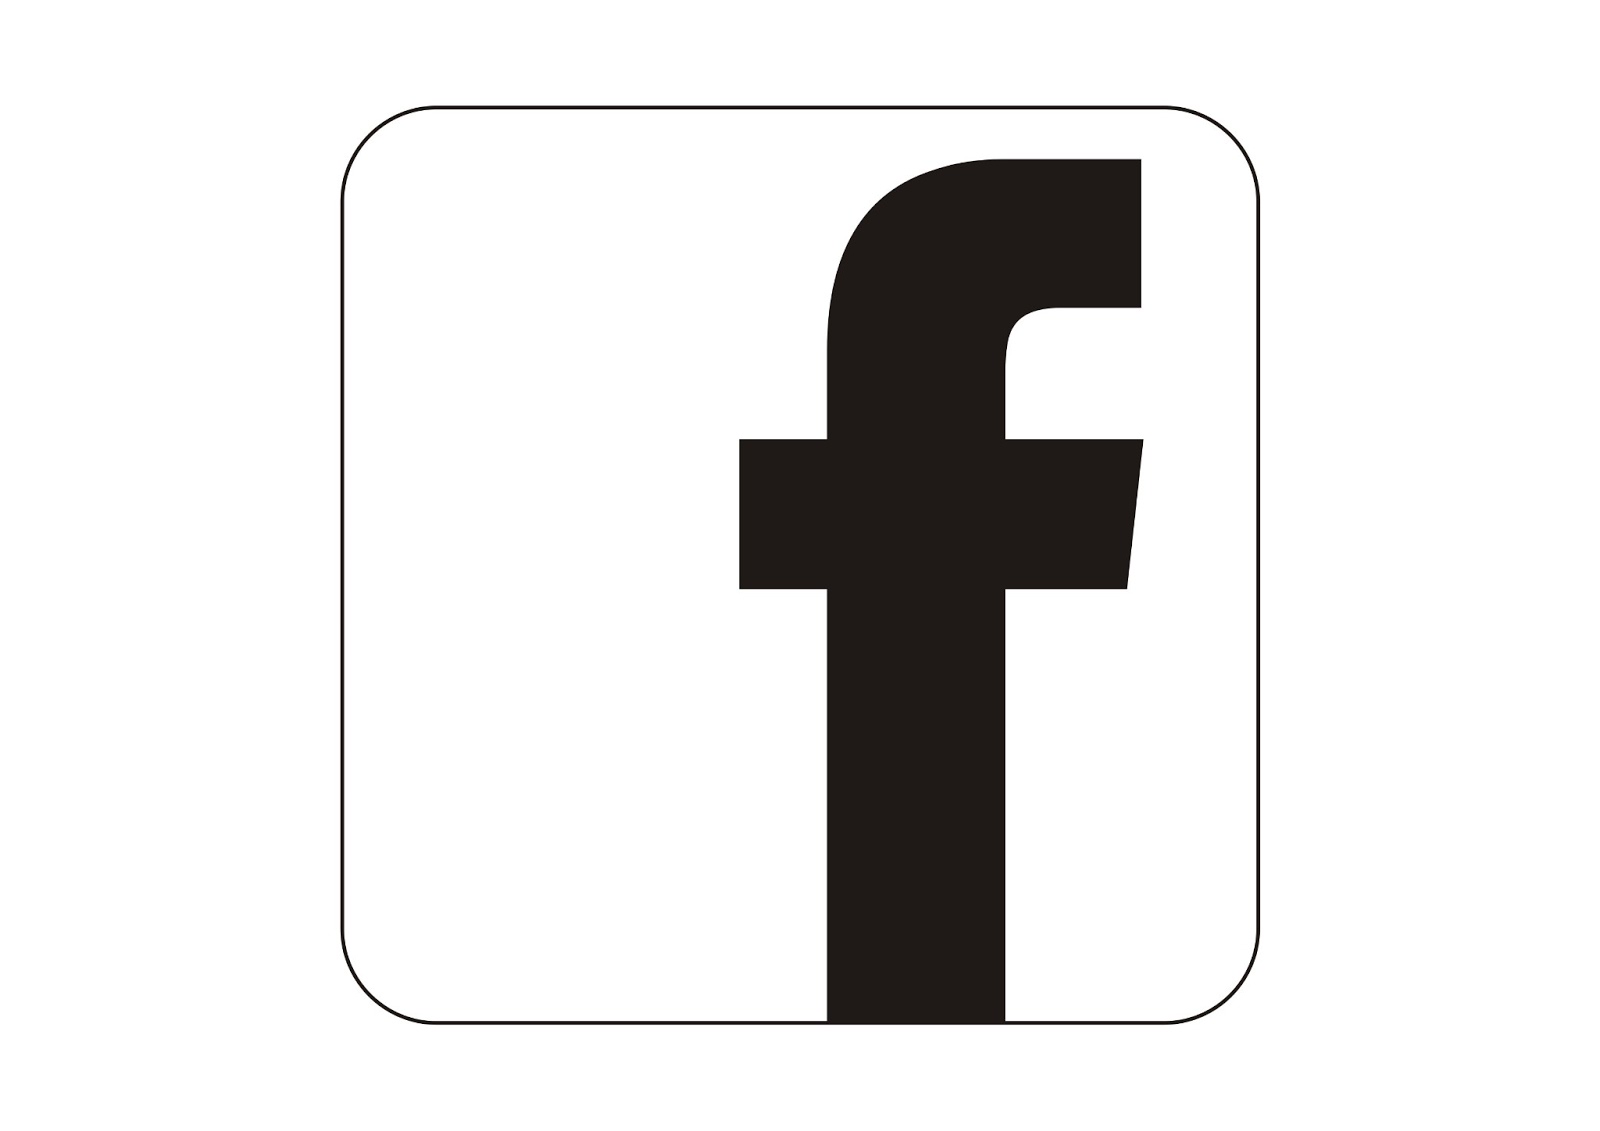 Seputar Desain Cara membuat logo Facebook dengan 